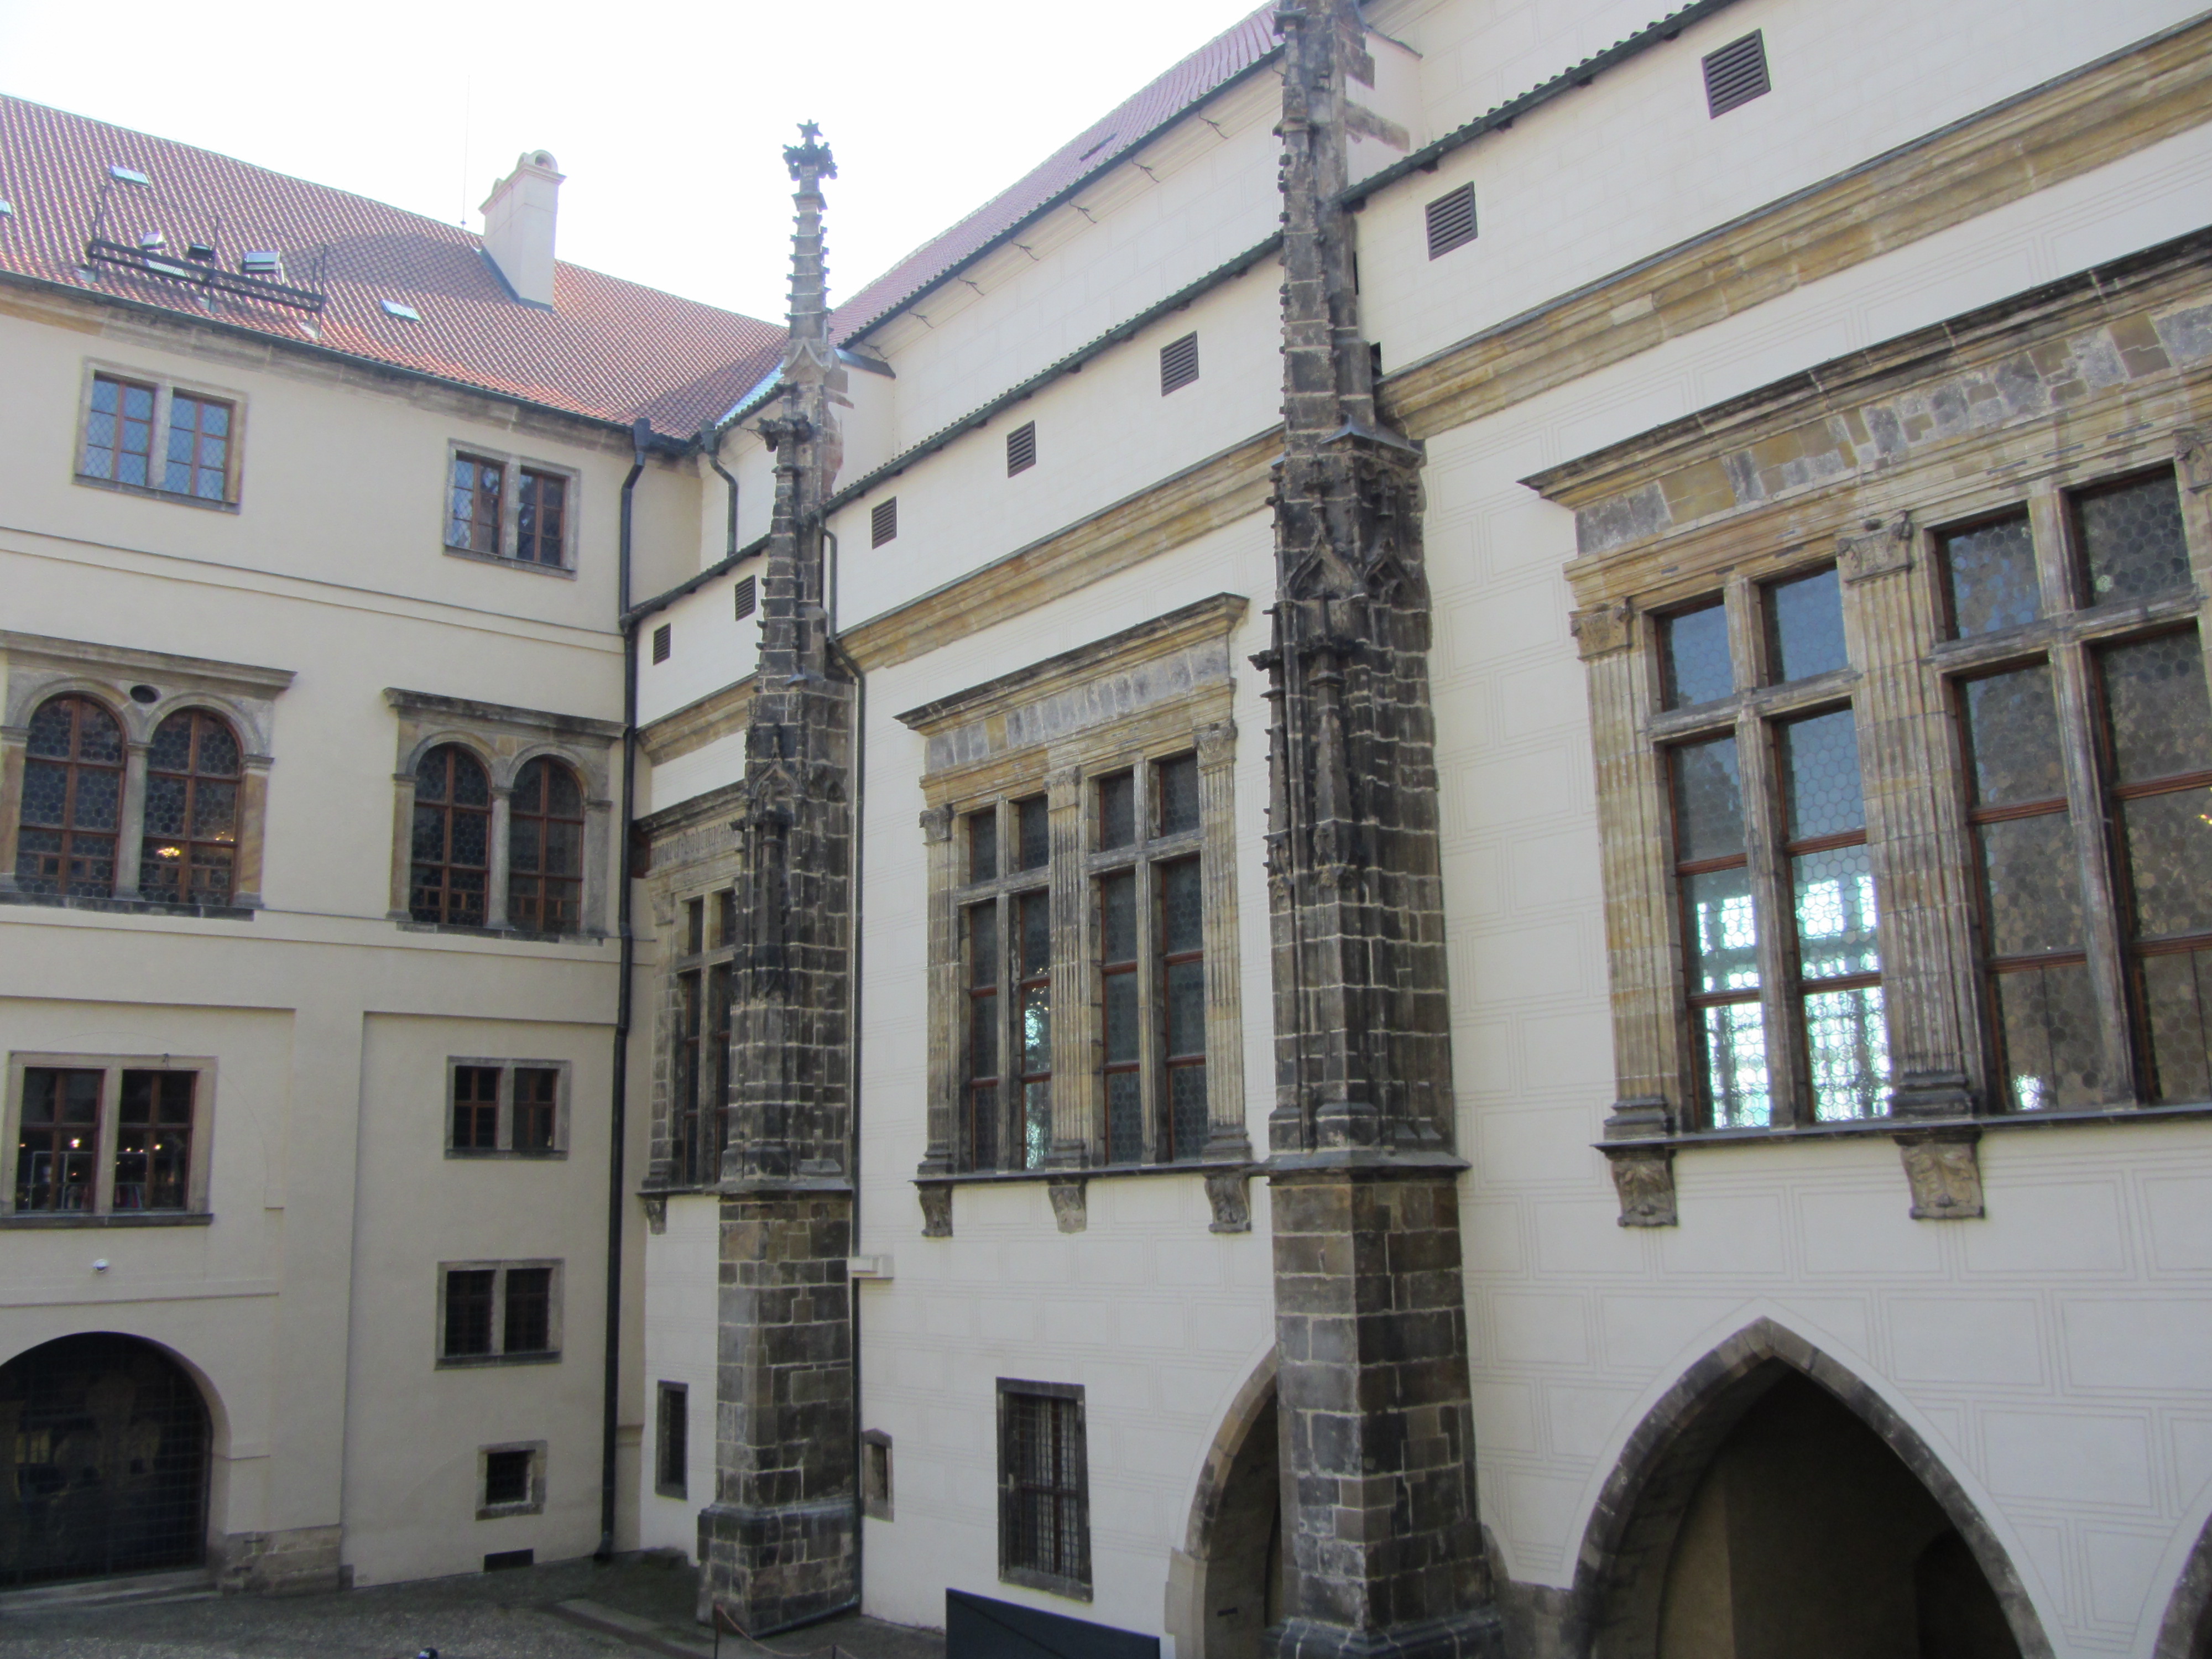 Ort des ersten Prager Fenstersturzes